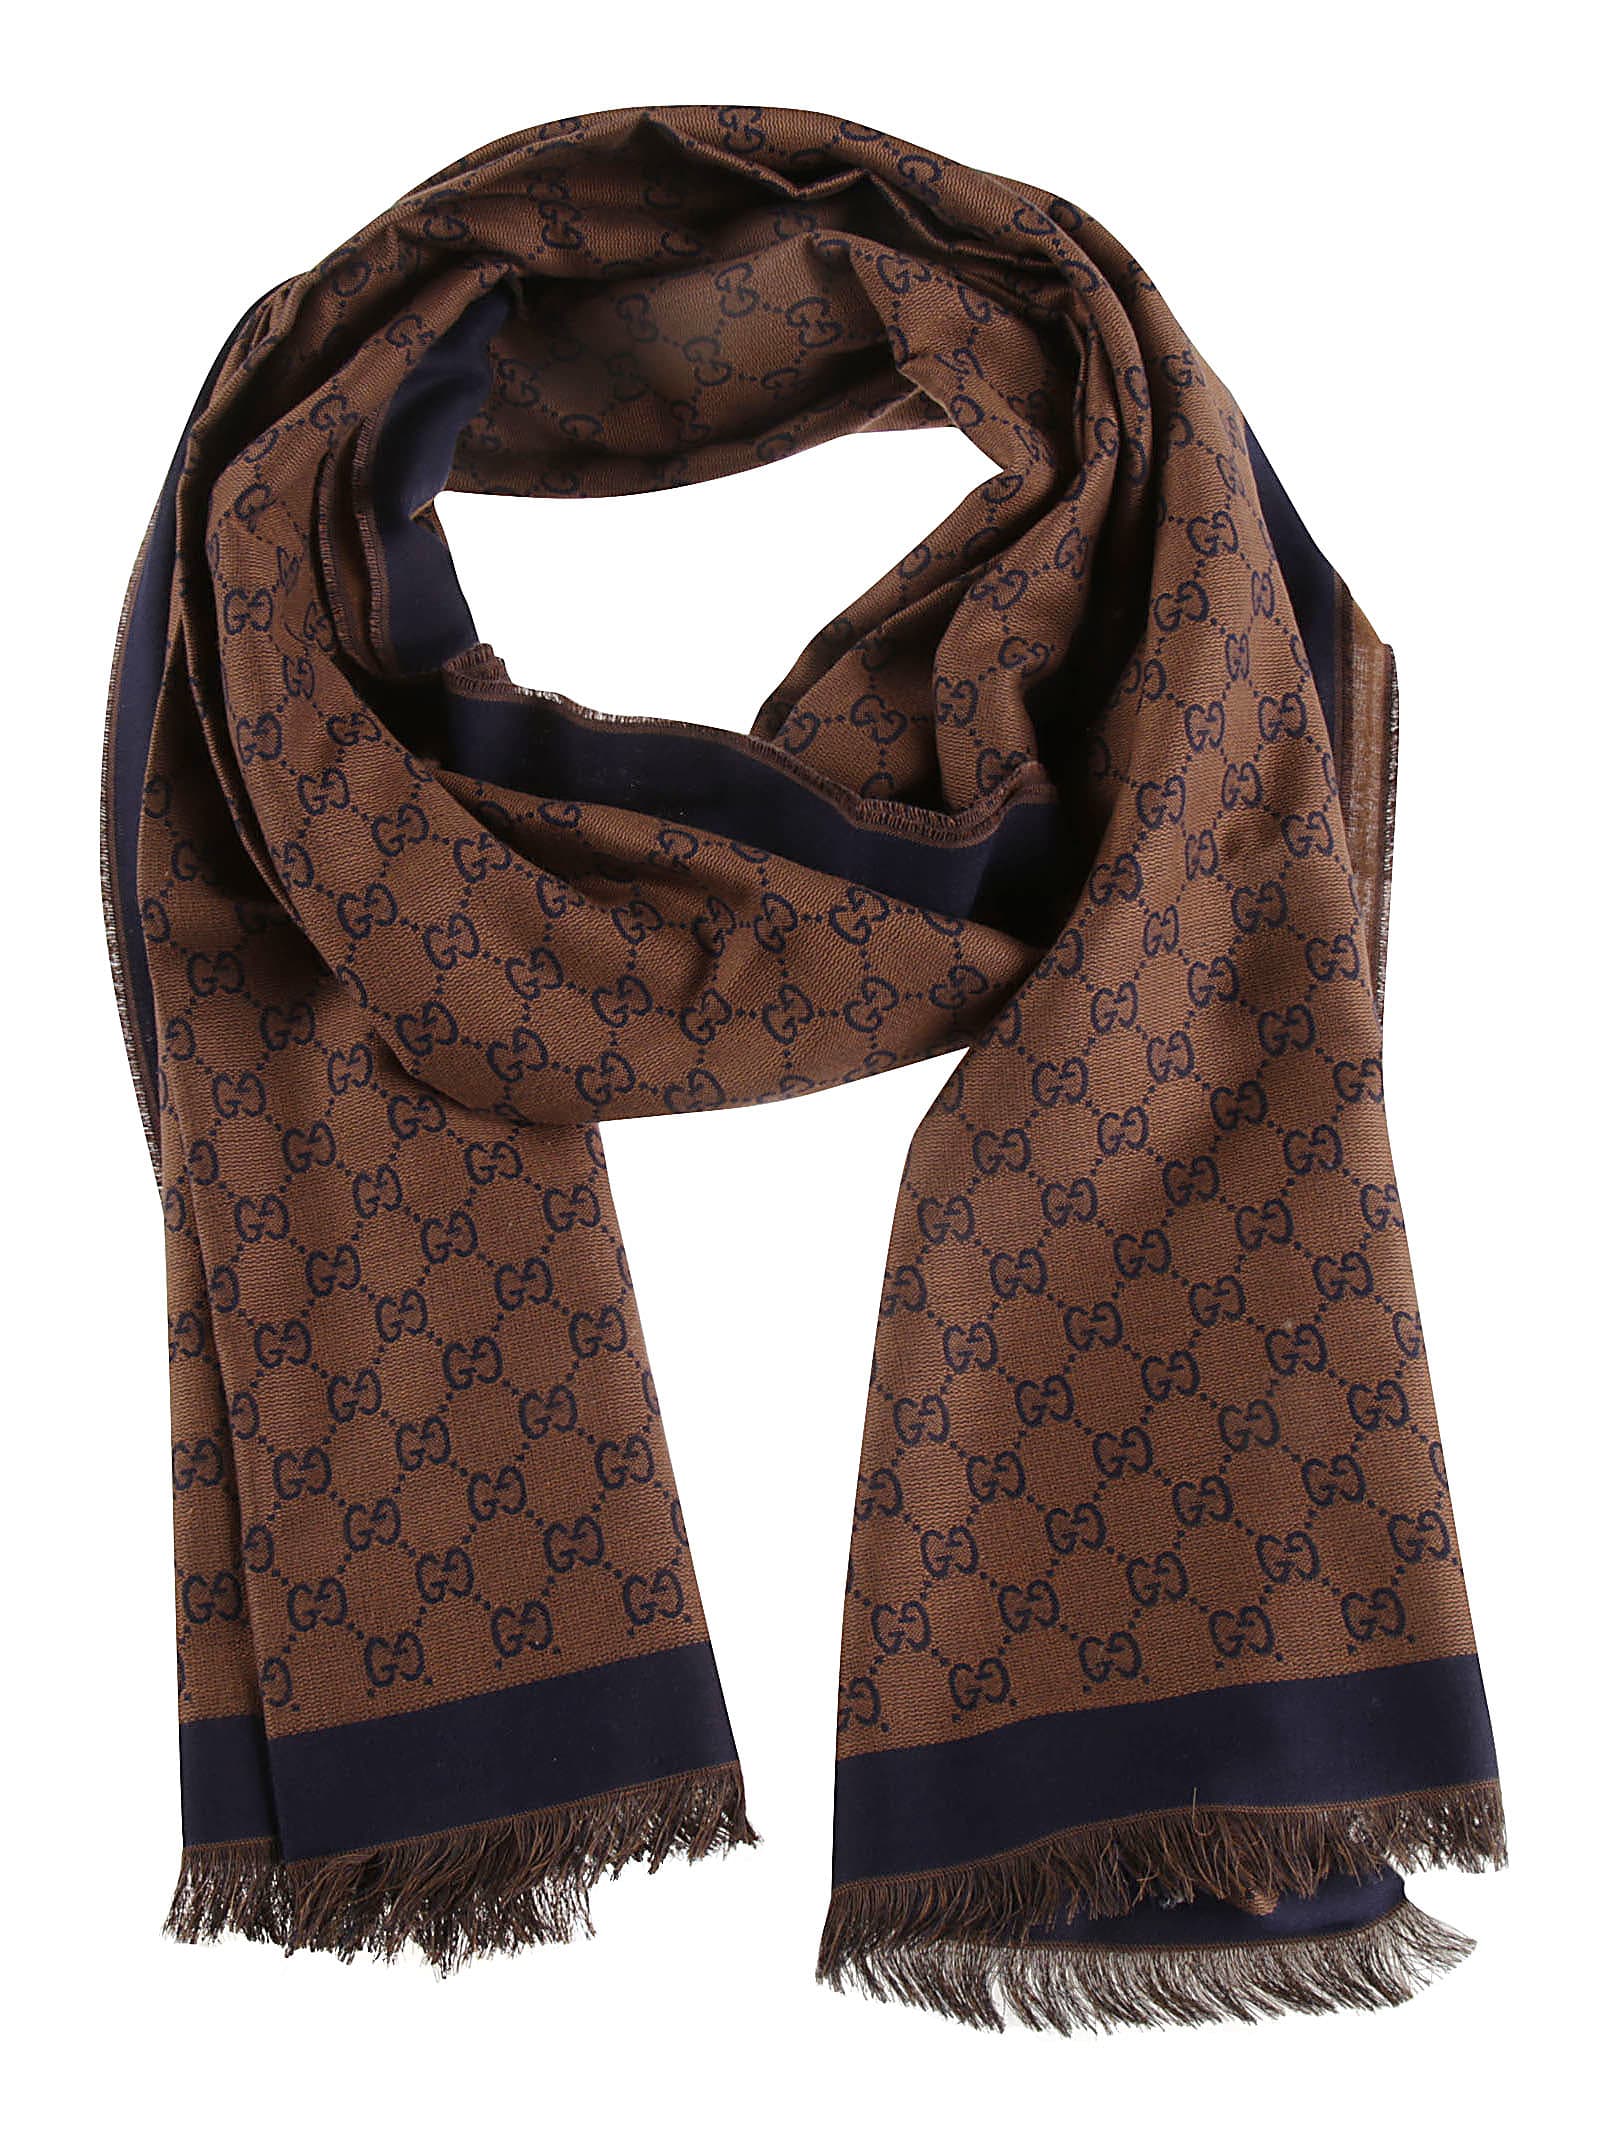 Gucci fringed edges logo print scarf